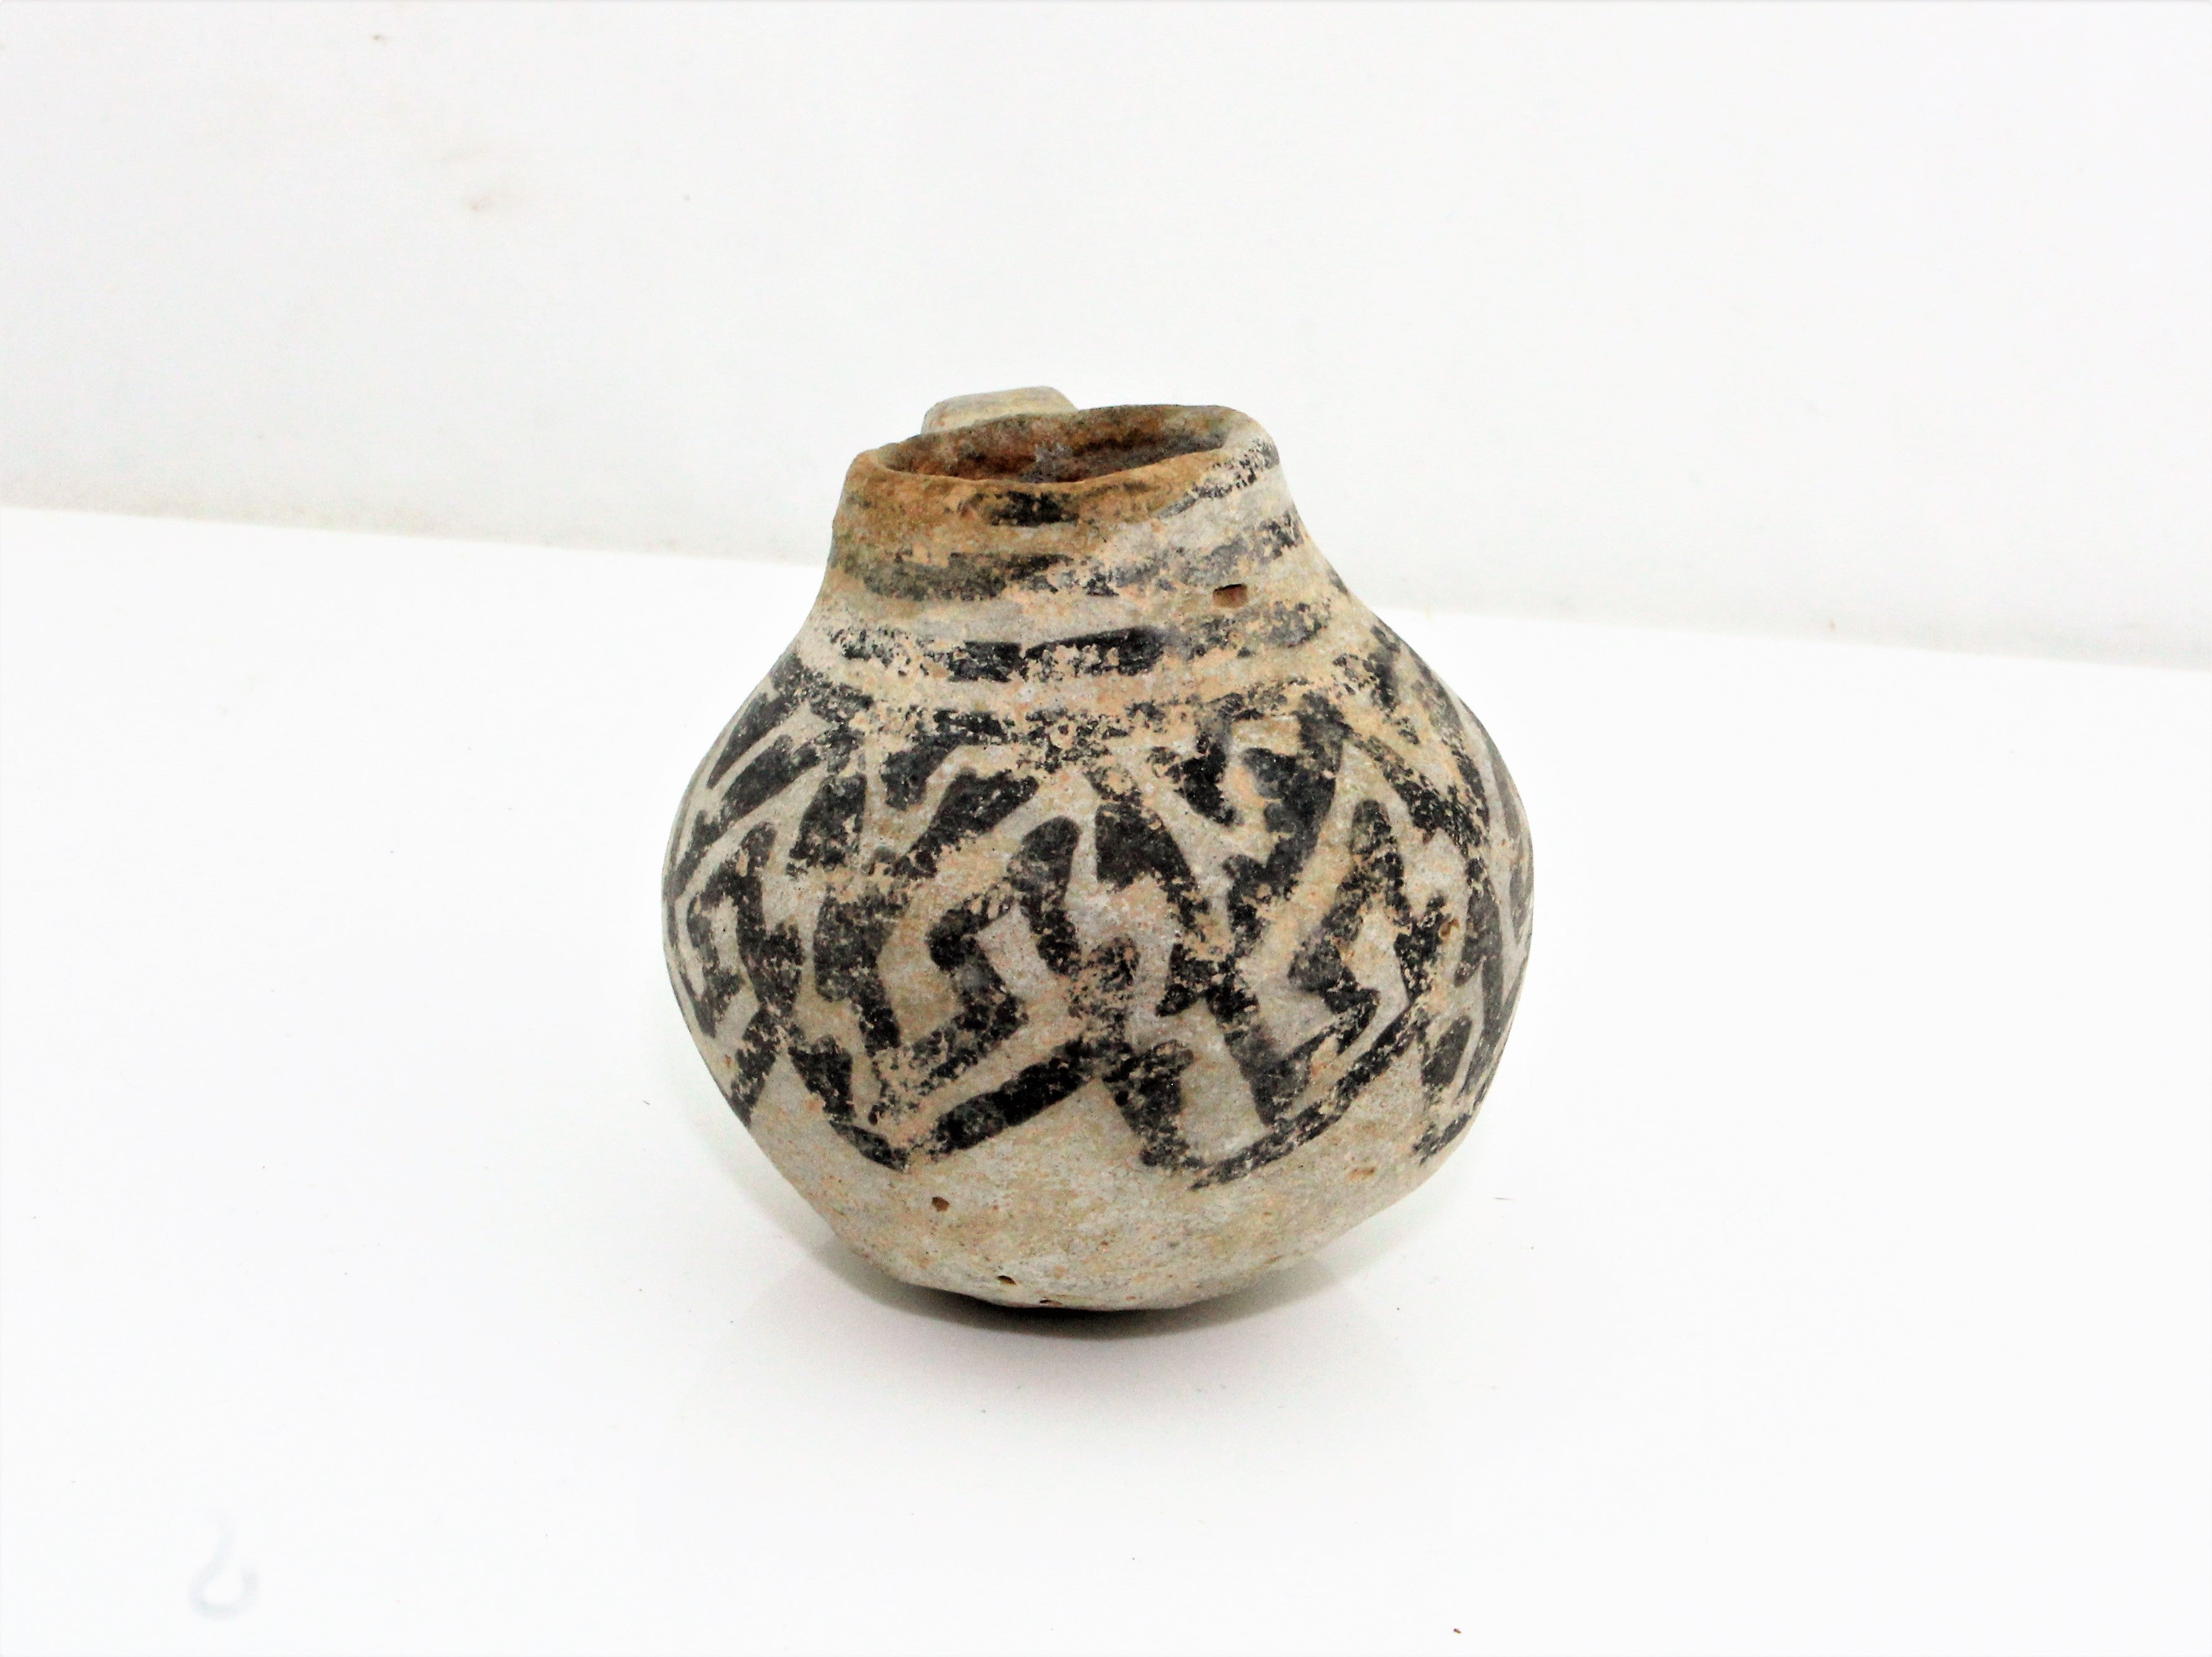 Miniature Pre-Historic Anasazi Pottery Cup